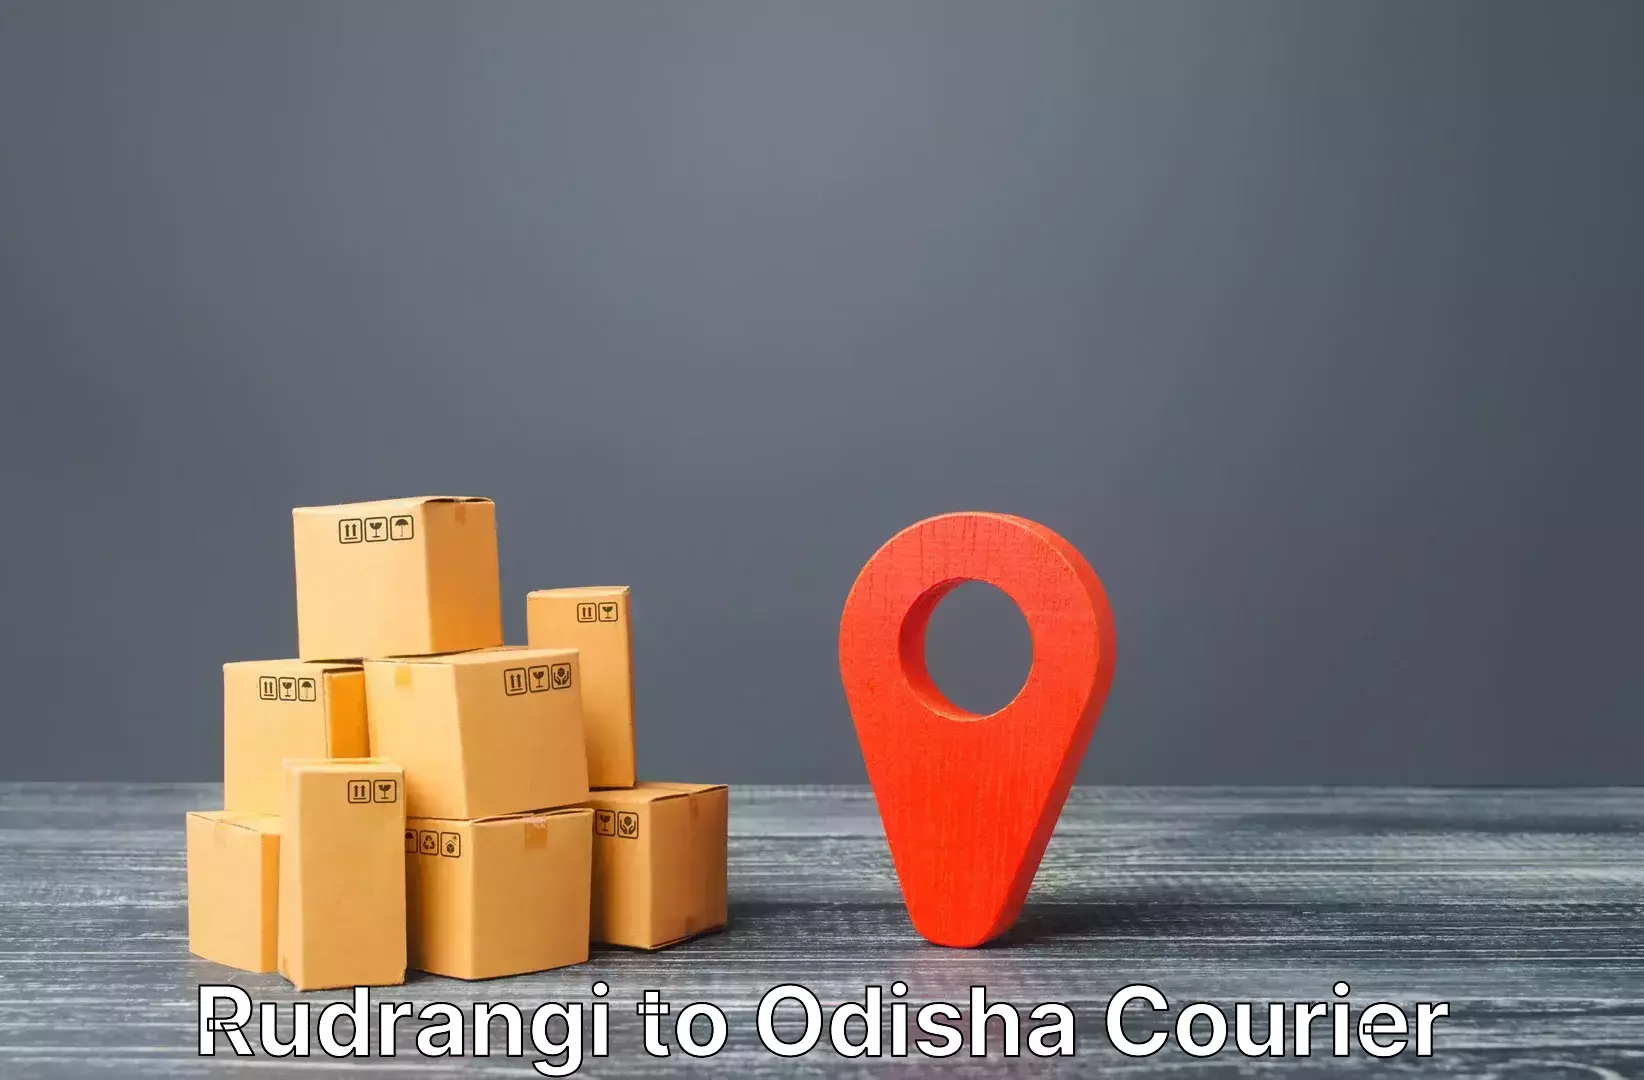 Luggage delivery logistics Rudrangi to Mathili